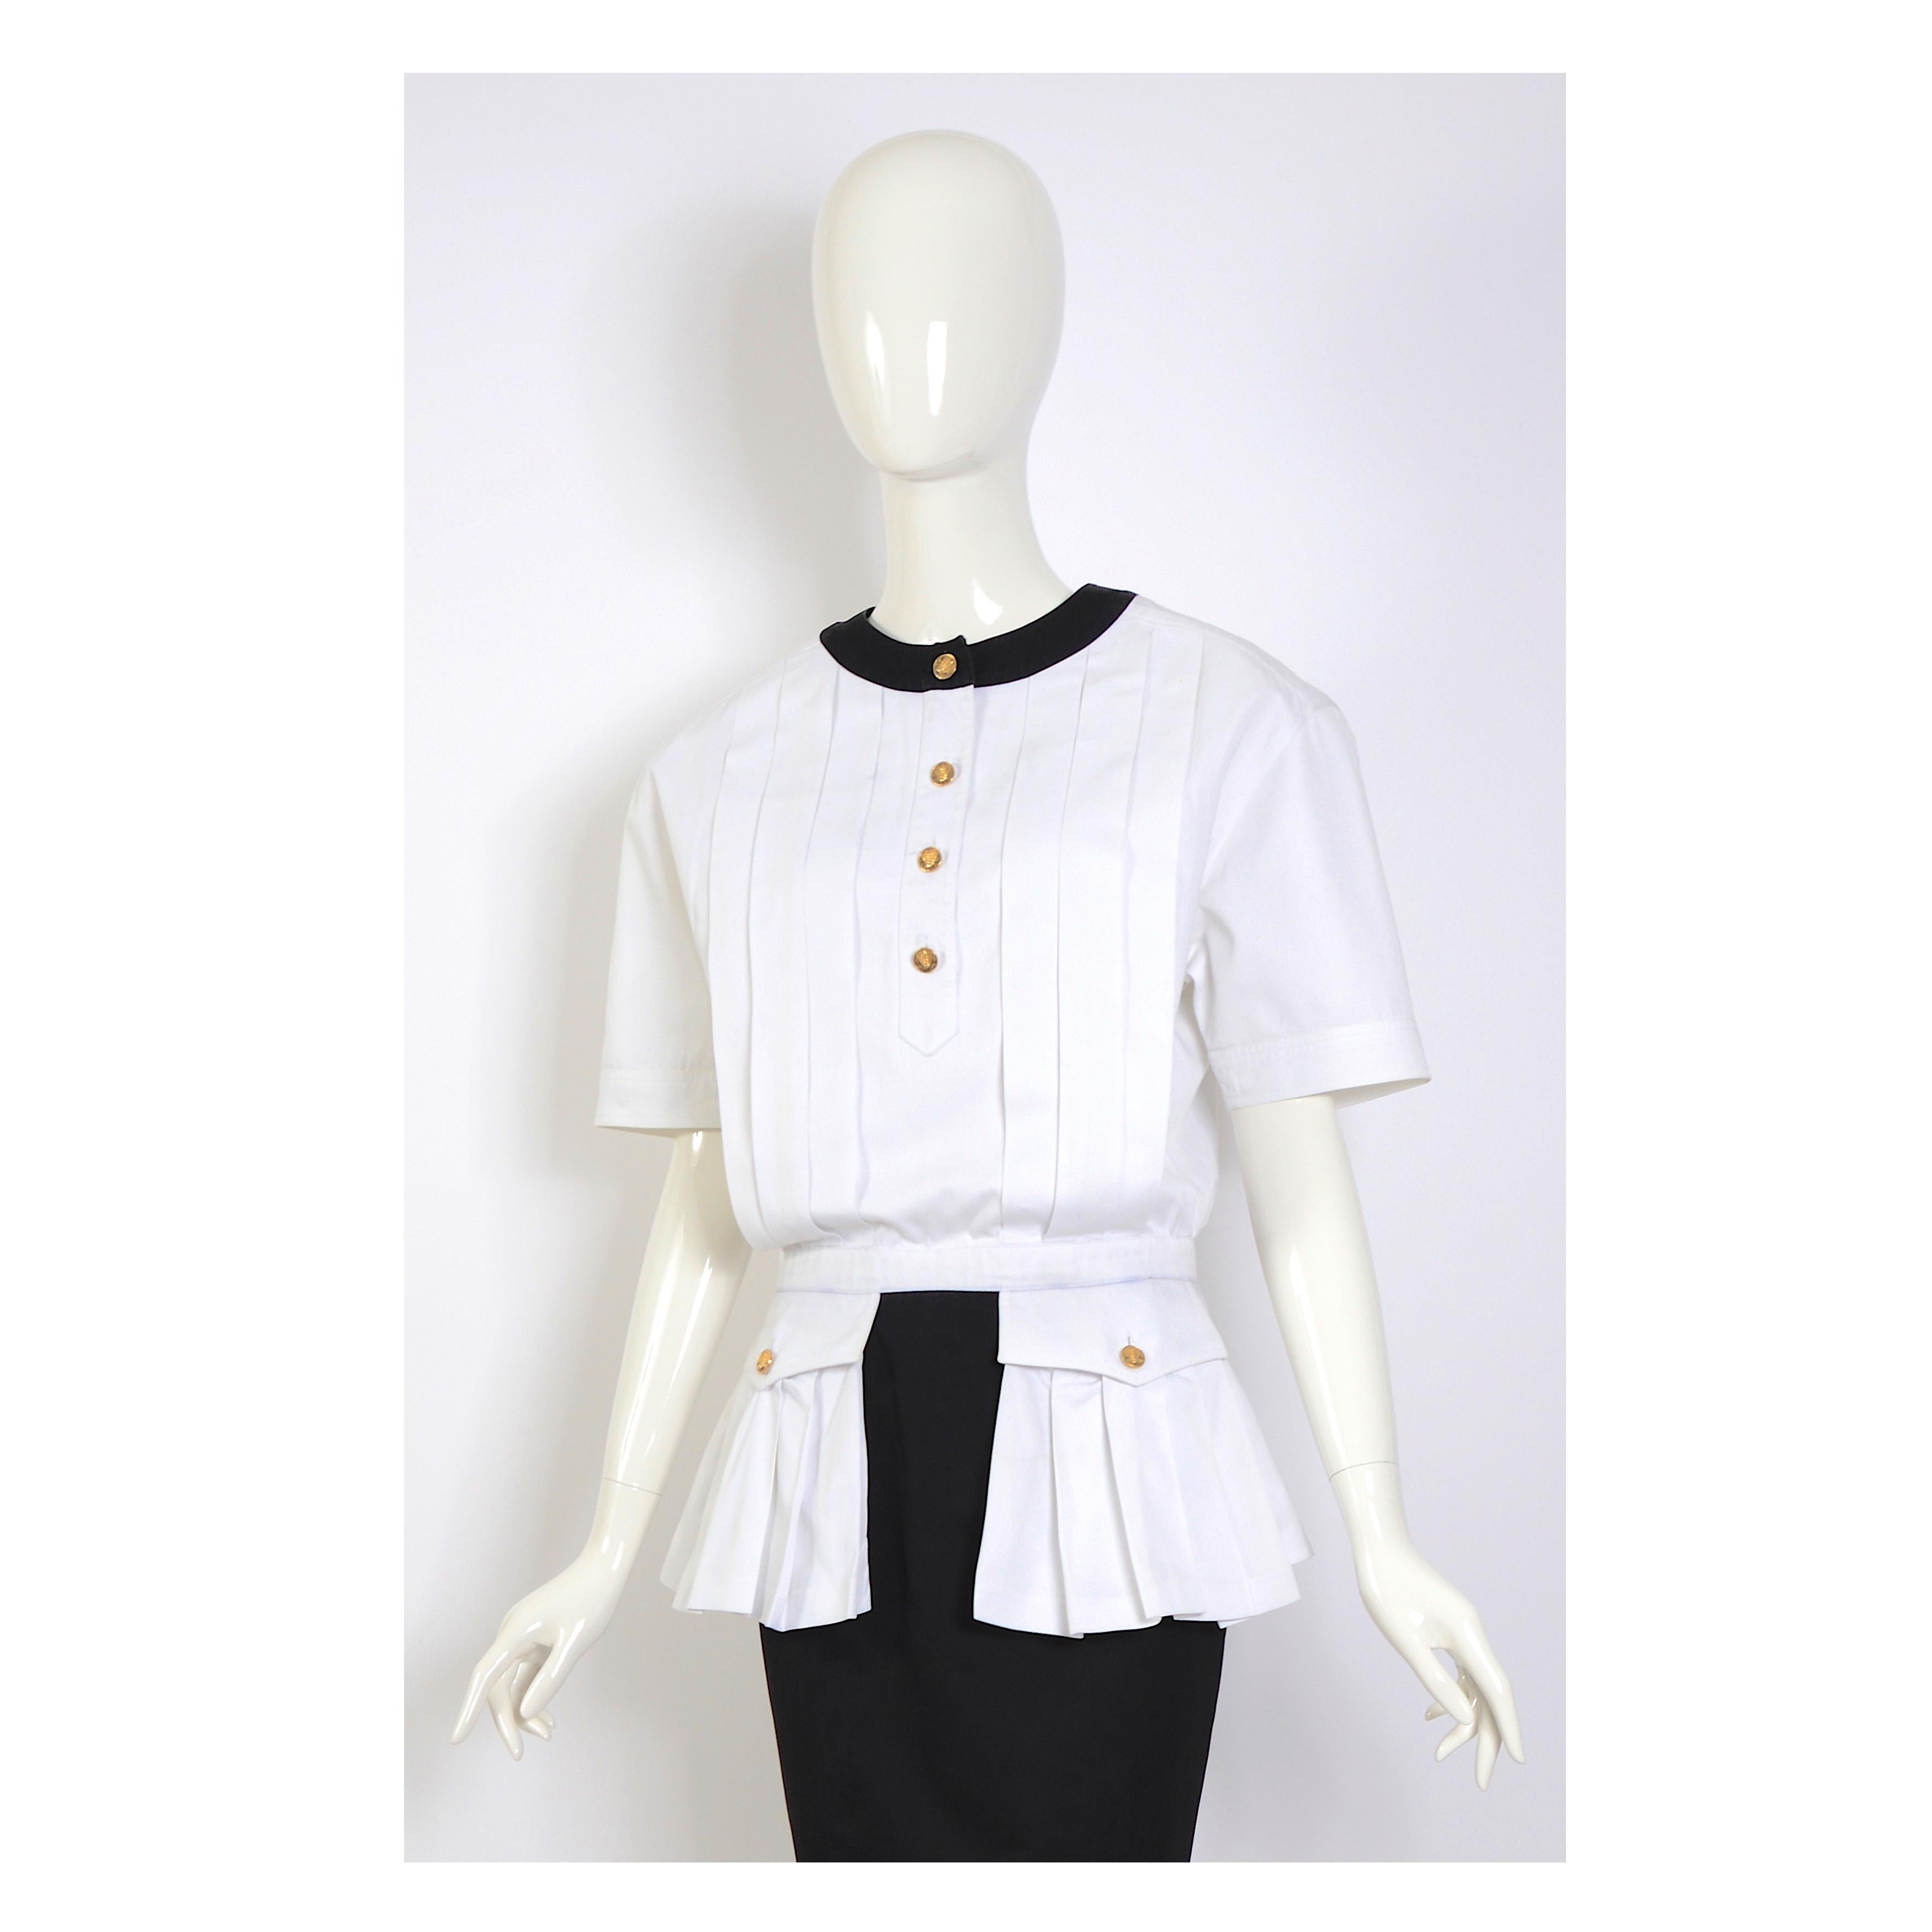 Robe Chanel en coton blanc et noir, col rond avec boutons dorés, manches courtes, plis sur le devant et poches plissées avec rabat et bouton.
Les larges épaulettes de la robe ont été retirées, mais il est possible de les remplacer si on le souhaite.